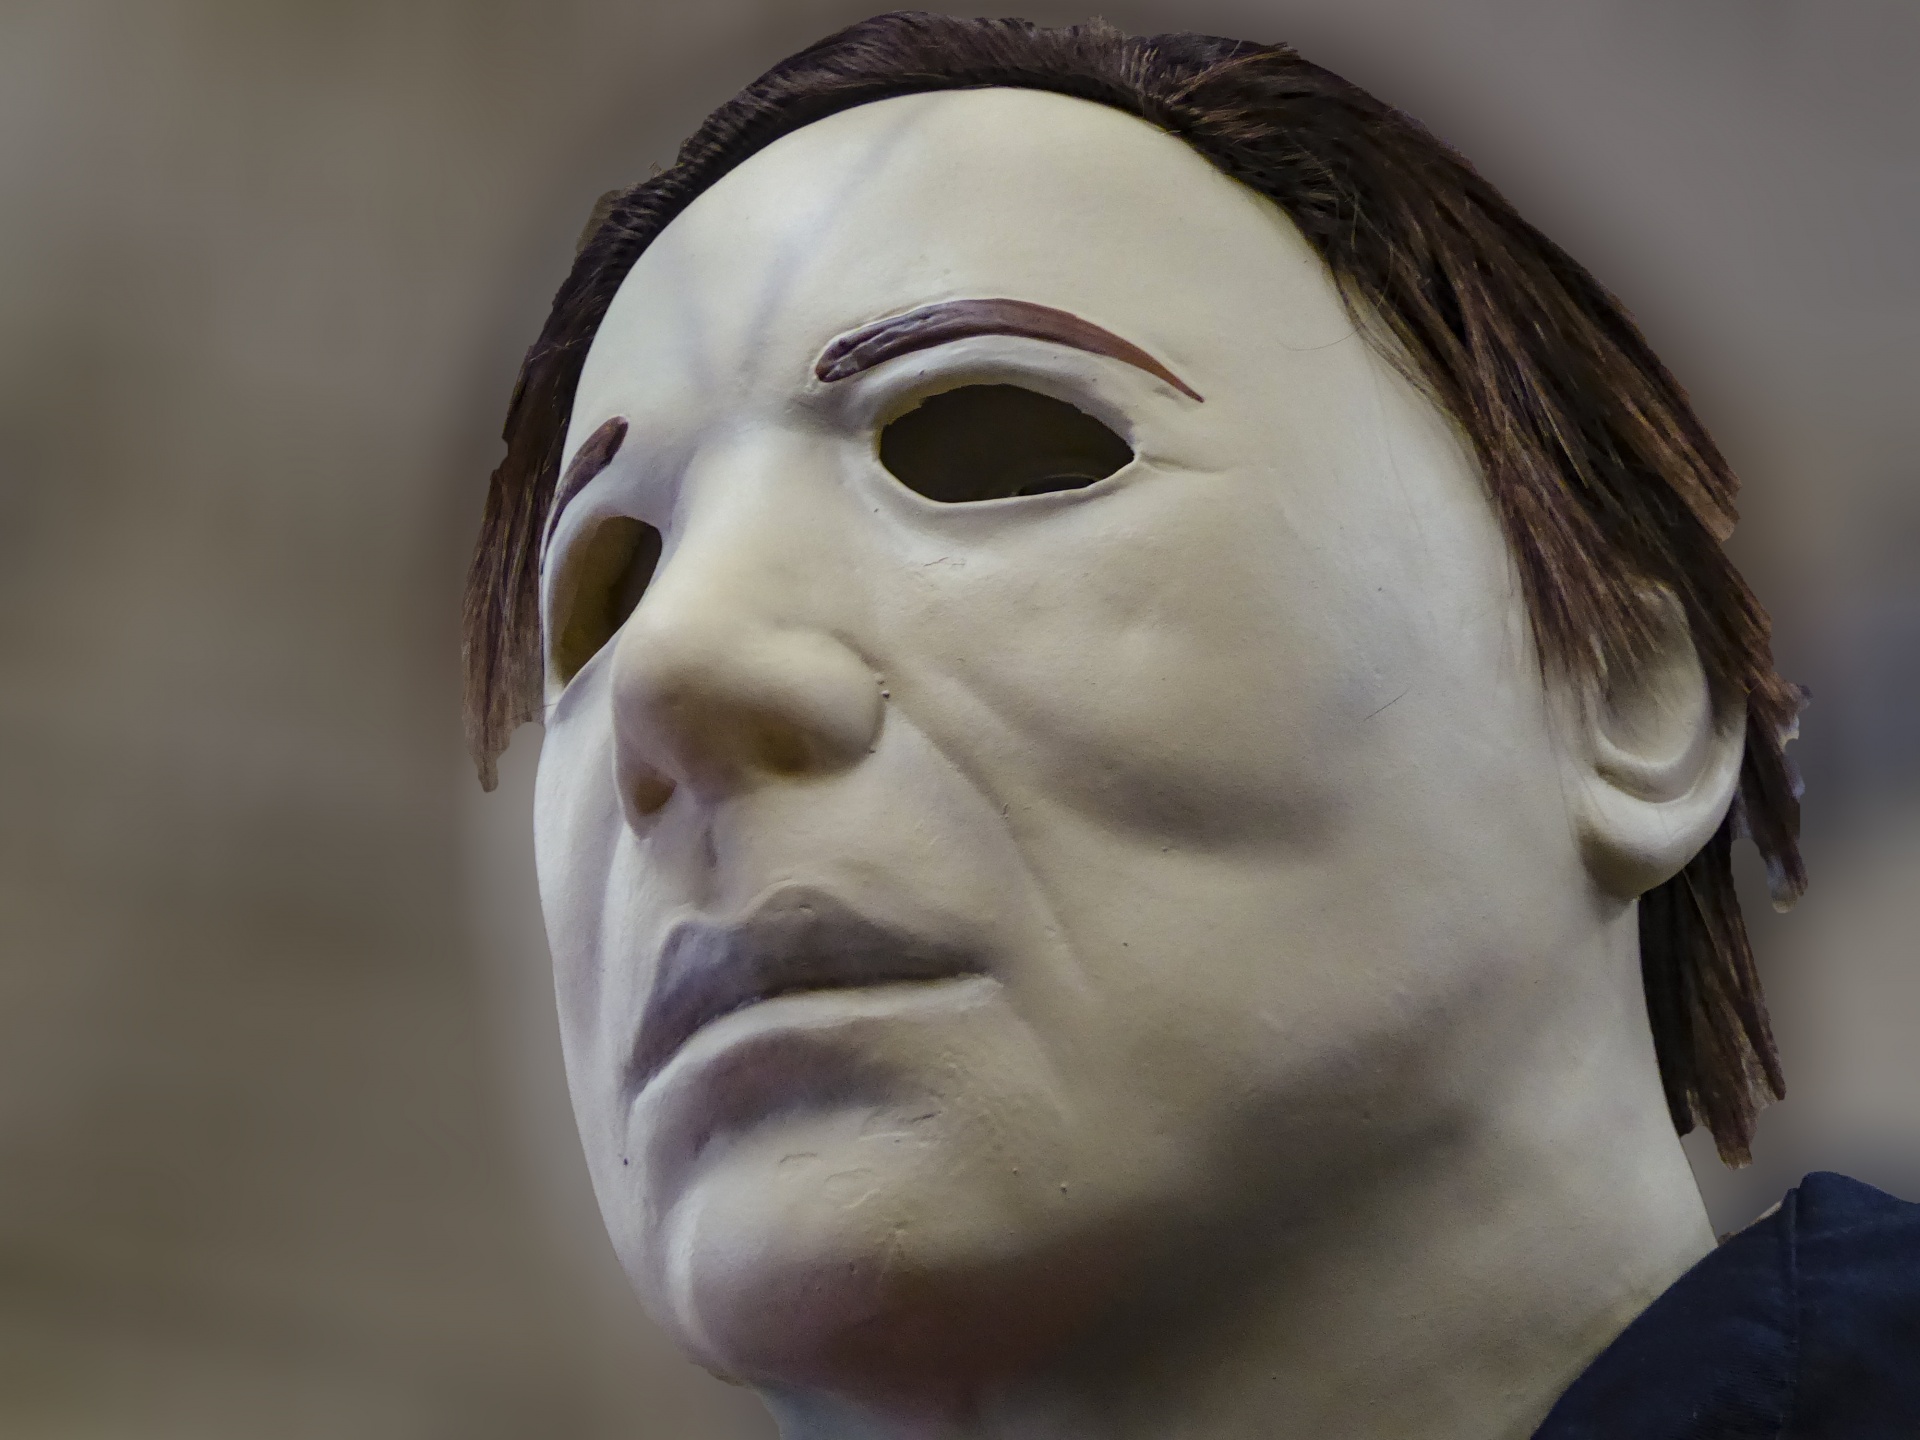 Halloween character Michael Myers look-alike